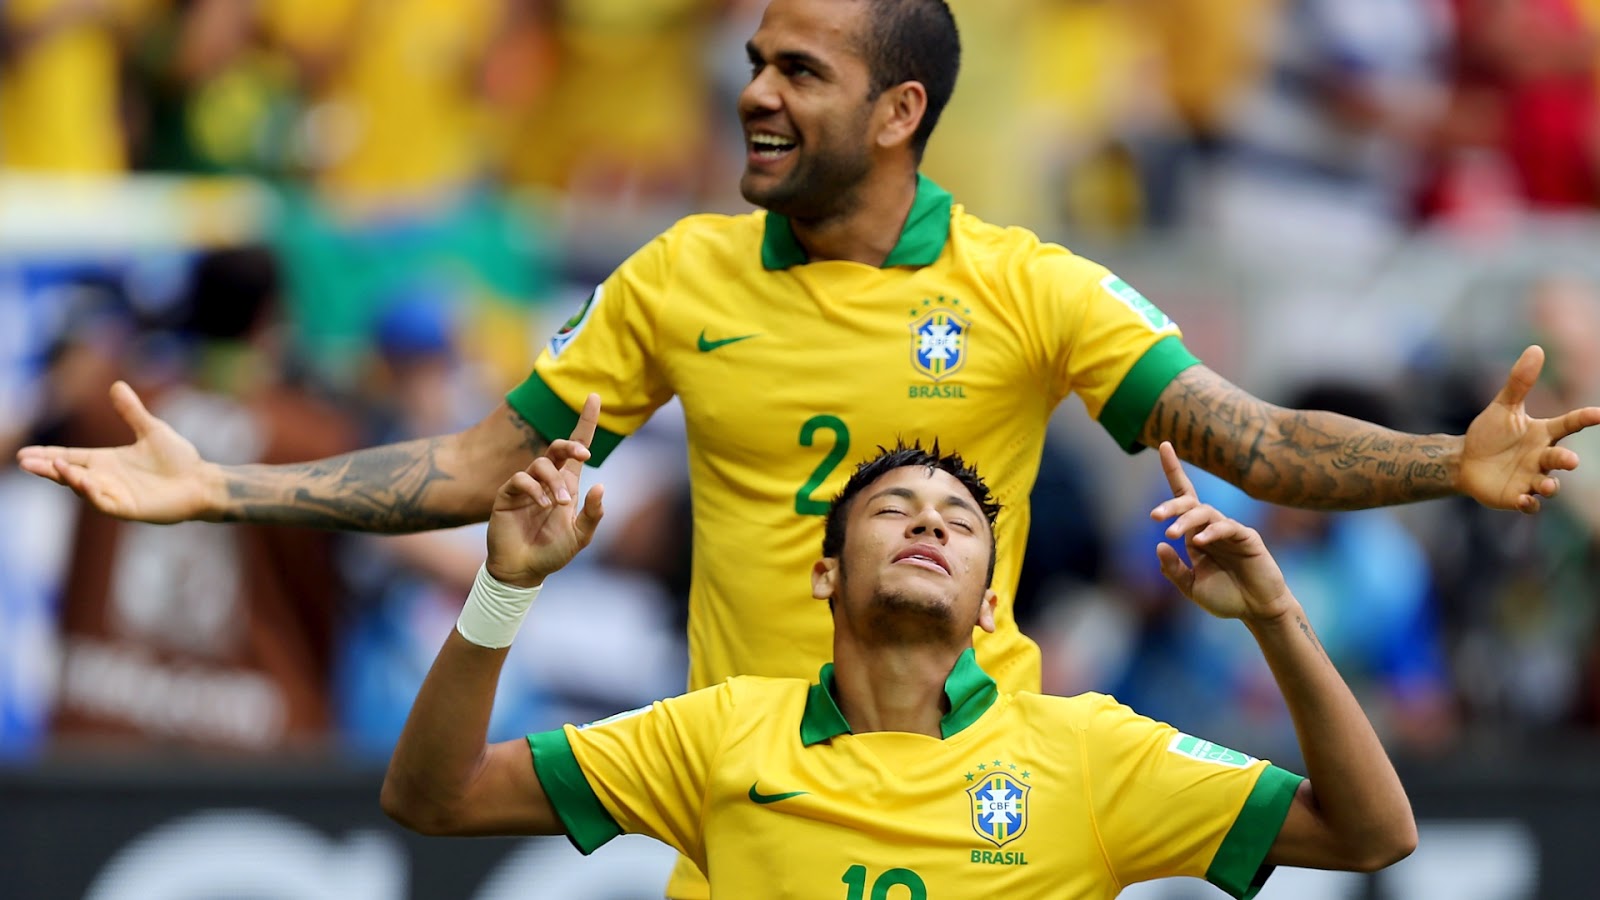 ALL SPORTS PLAYERS: Dani Alves Brazil Footballer 2014